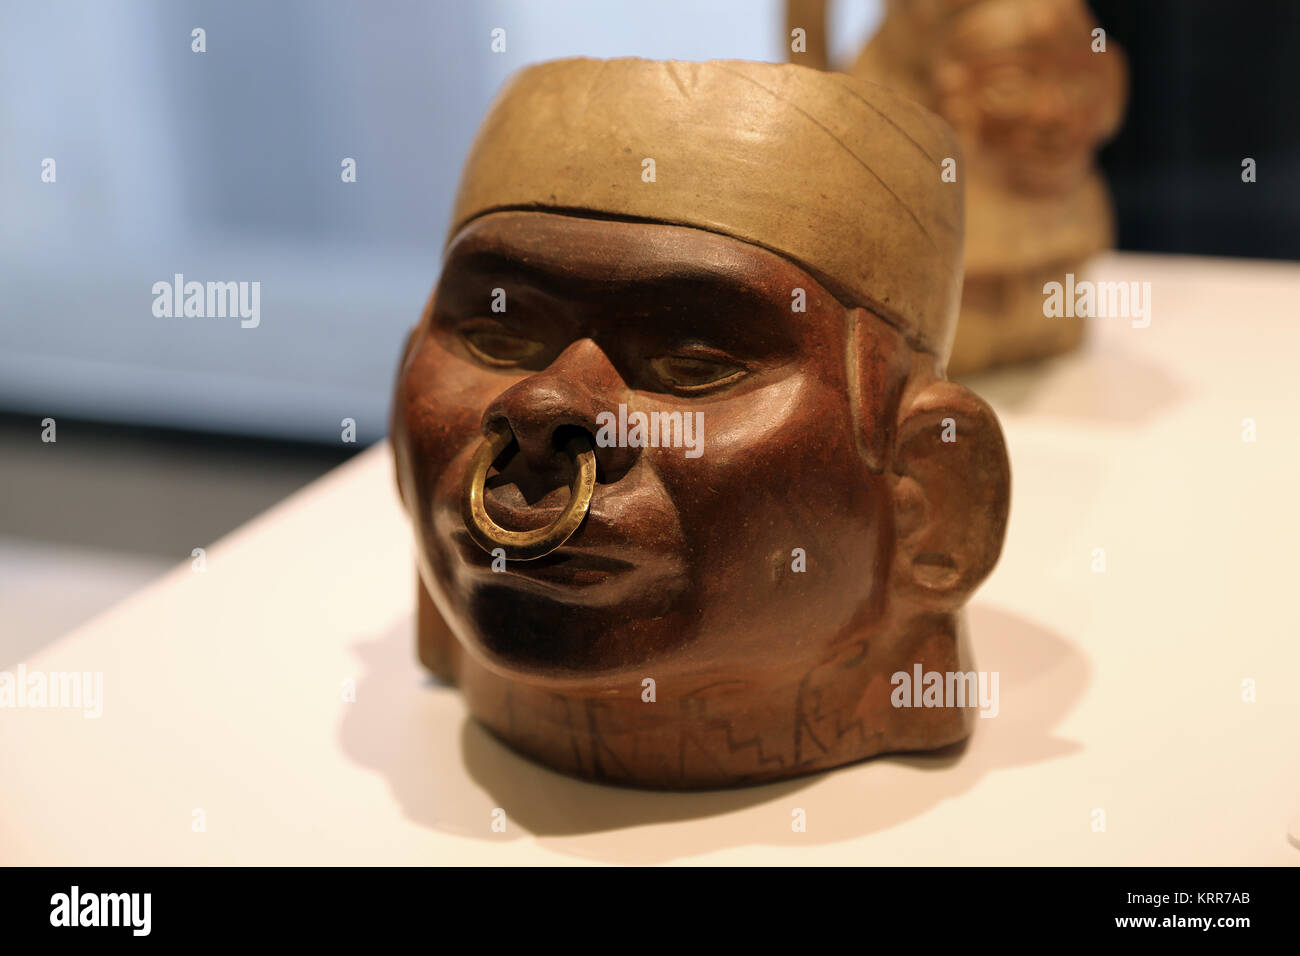 Portrait Huaco représentant une figure d'élite. La culture Mochica. Le Pérou. 1 800 AD. Musée des Cultures du Monde. Espagne Banque D'Images